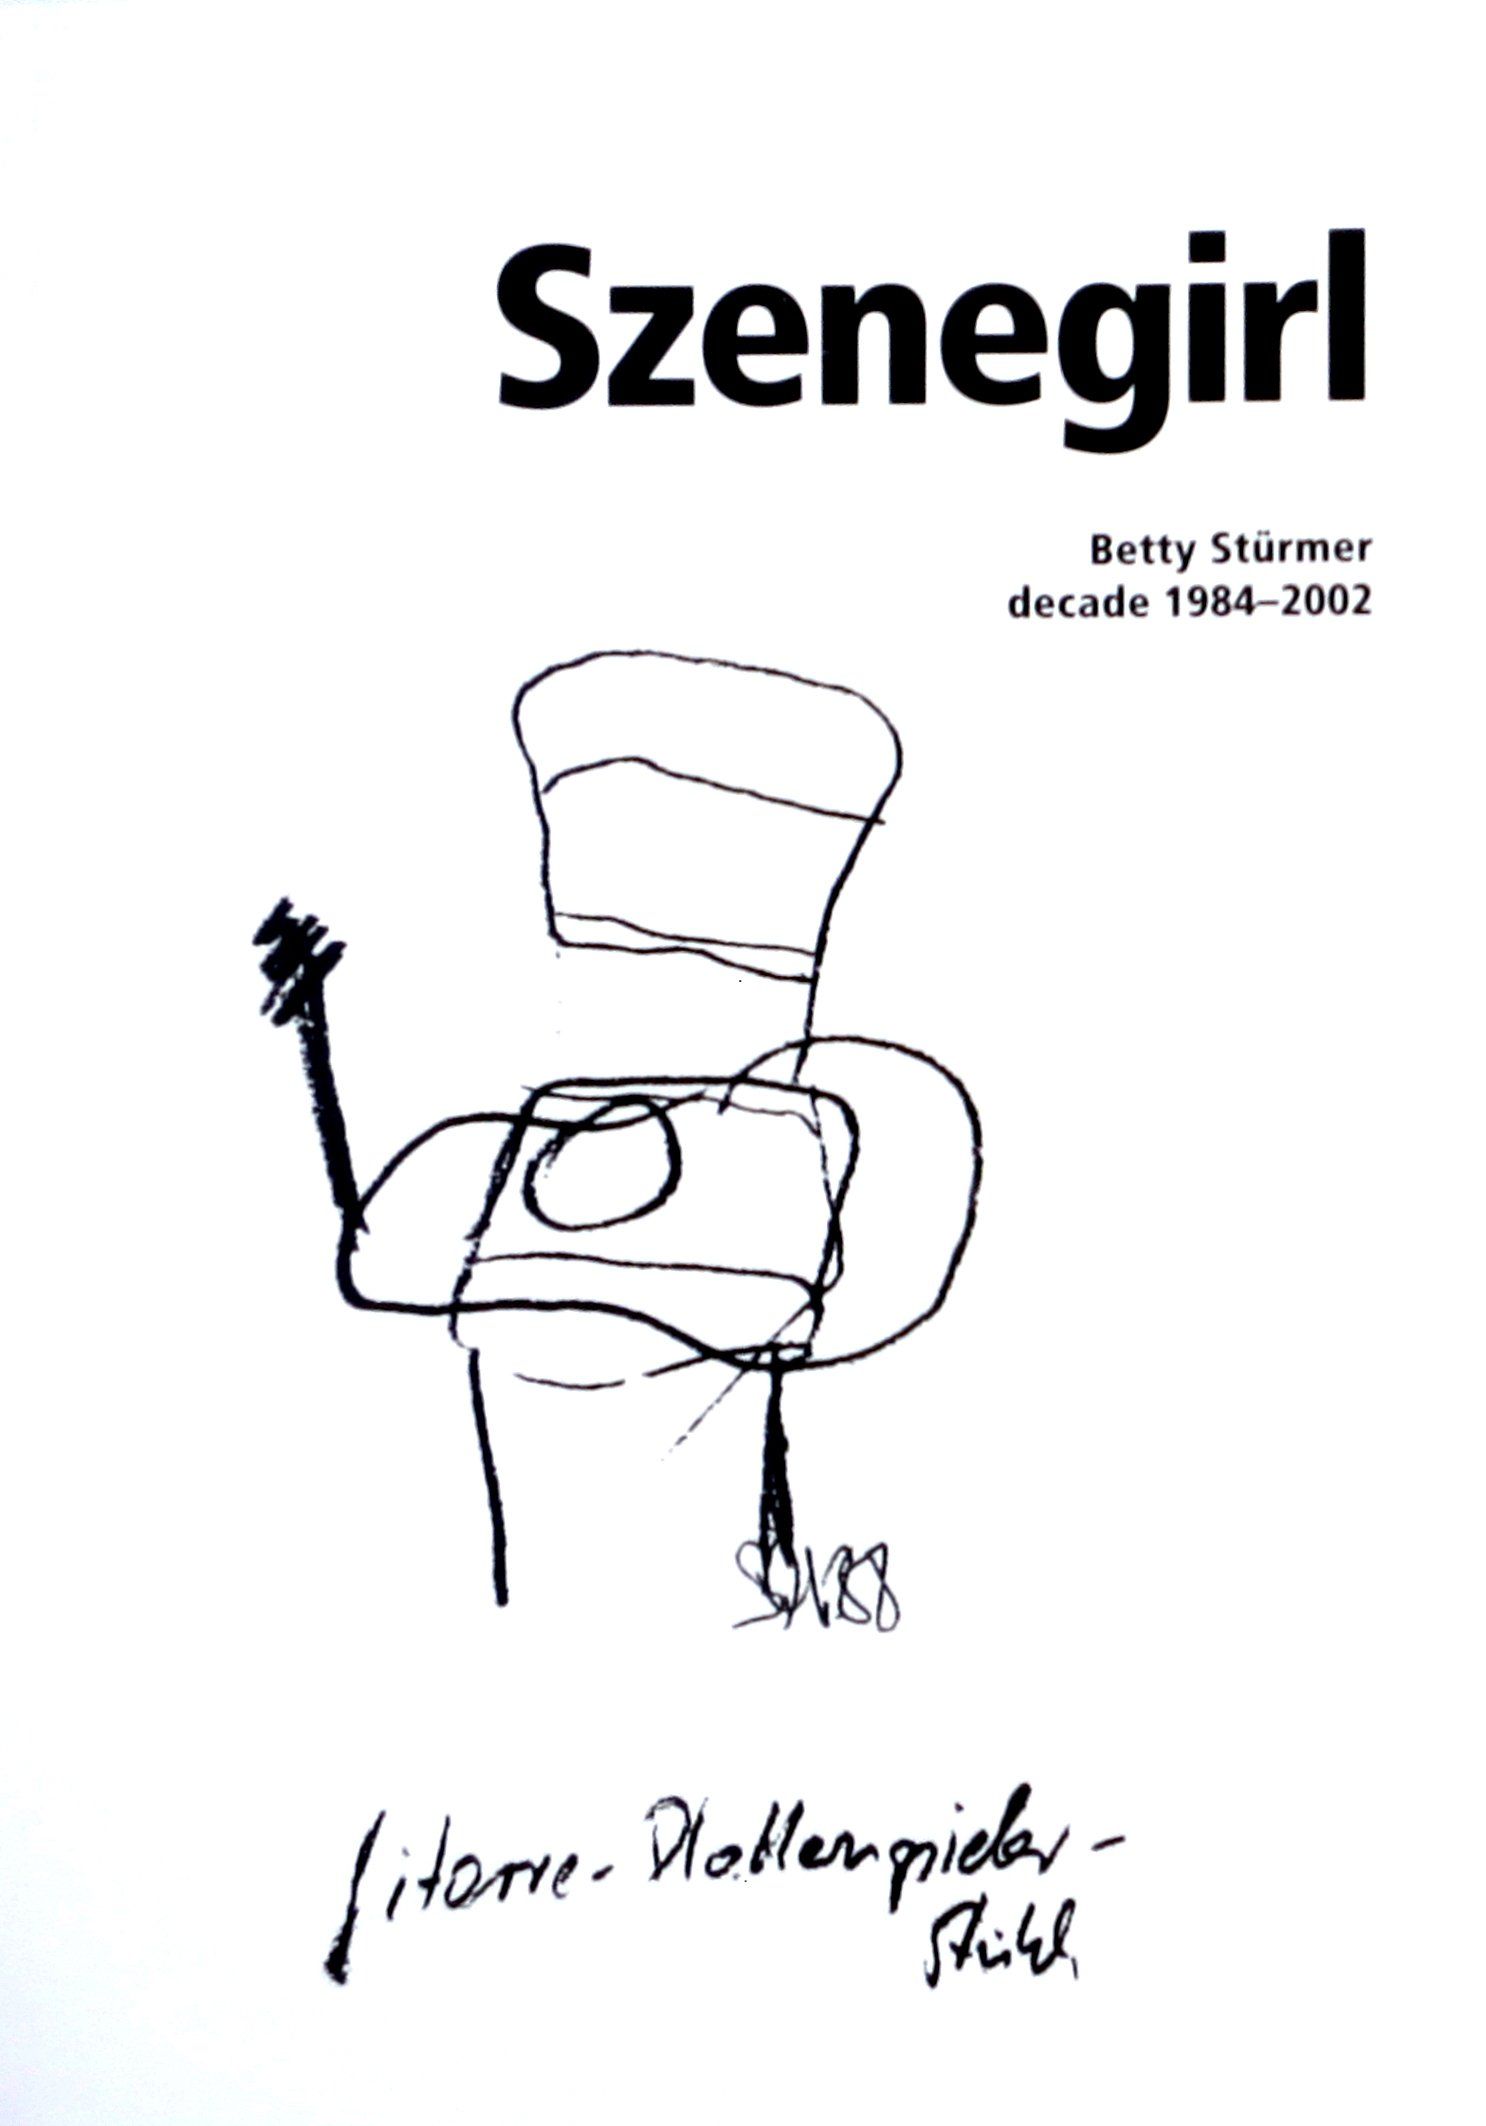 autobiographie Betty Stürmer, Szenegirl, Berlin 80er, 90er, Clubkultur, Fischbüro